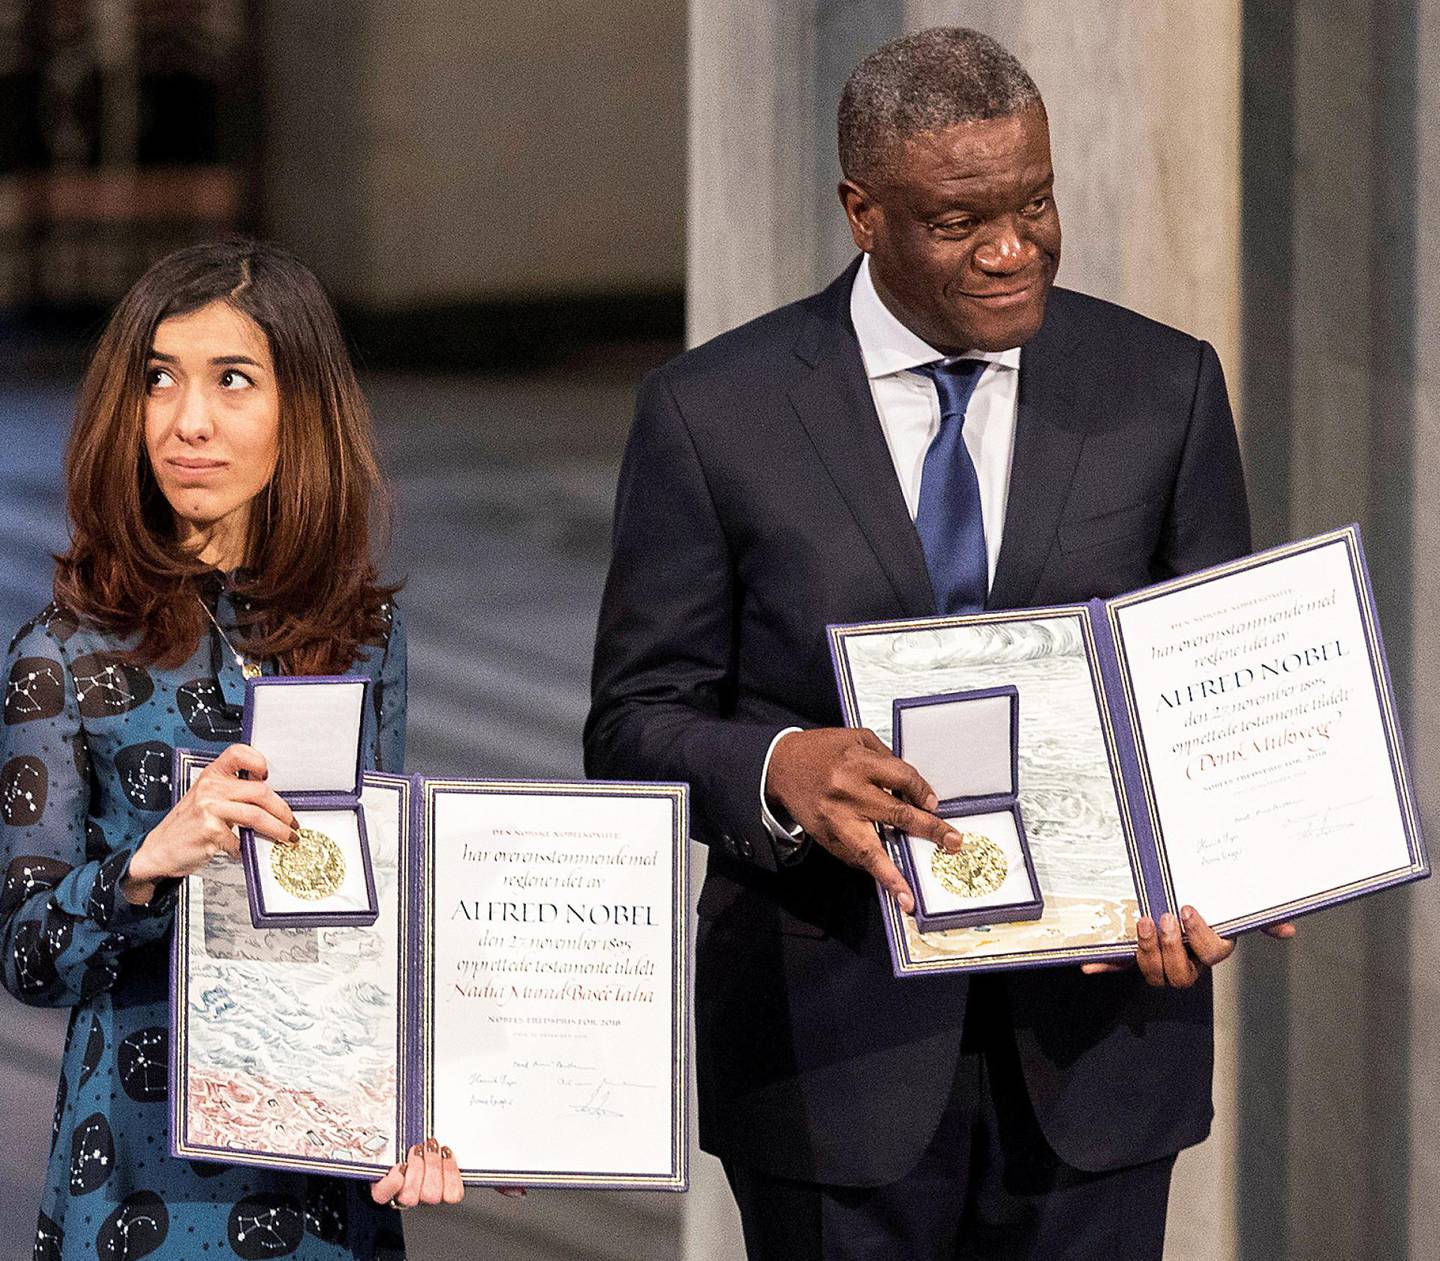 VOLD: Seksualisert vold er sentralt i mange konflikter. Denis Mukwege og Nadia Murad fikk Nobels fredspris for sin innsats mot dette. FOTO: NTB SCANPIX